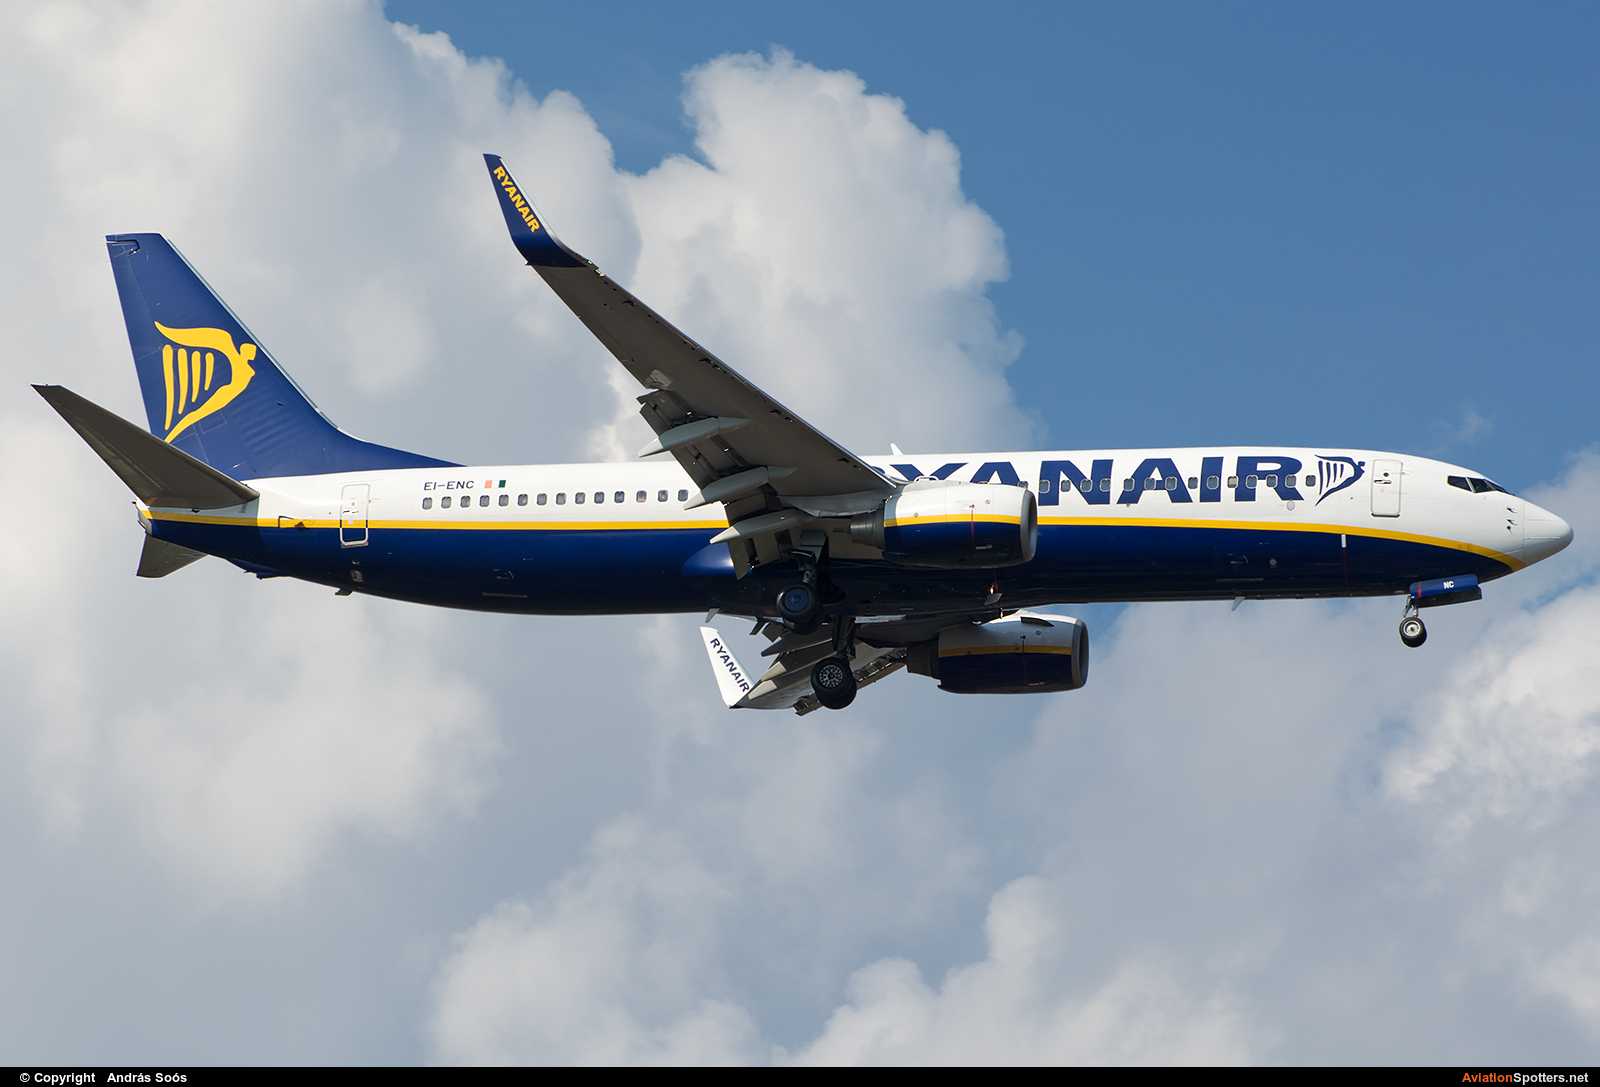 Ryanair  -  737-800  (EI-ENC) By András Soós (sas1965)